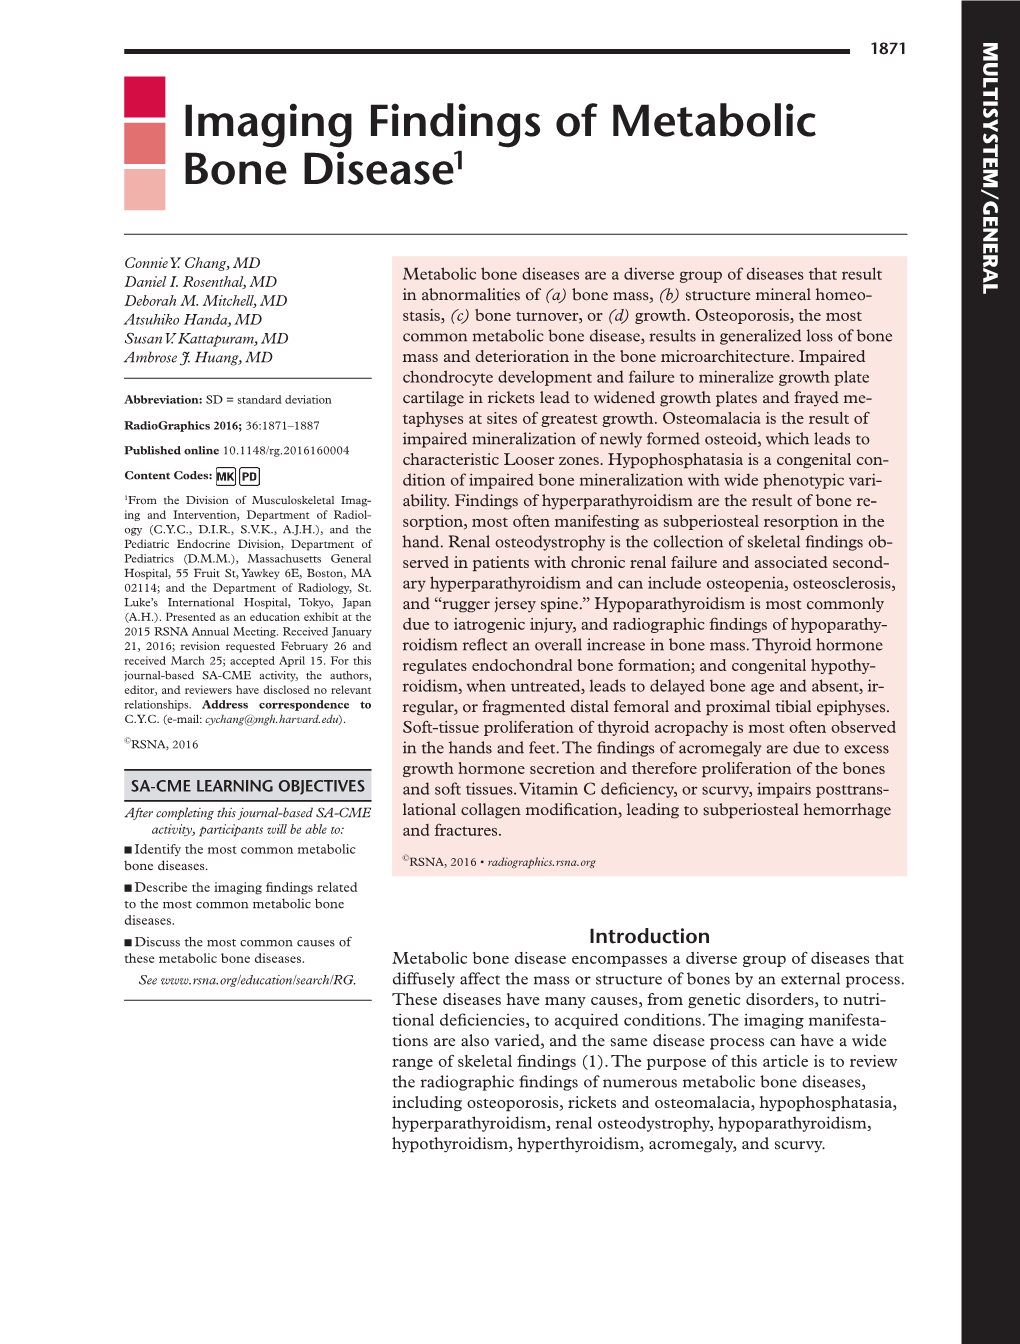 Imaging Findings of Metabolic Bone Disease1